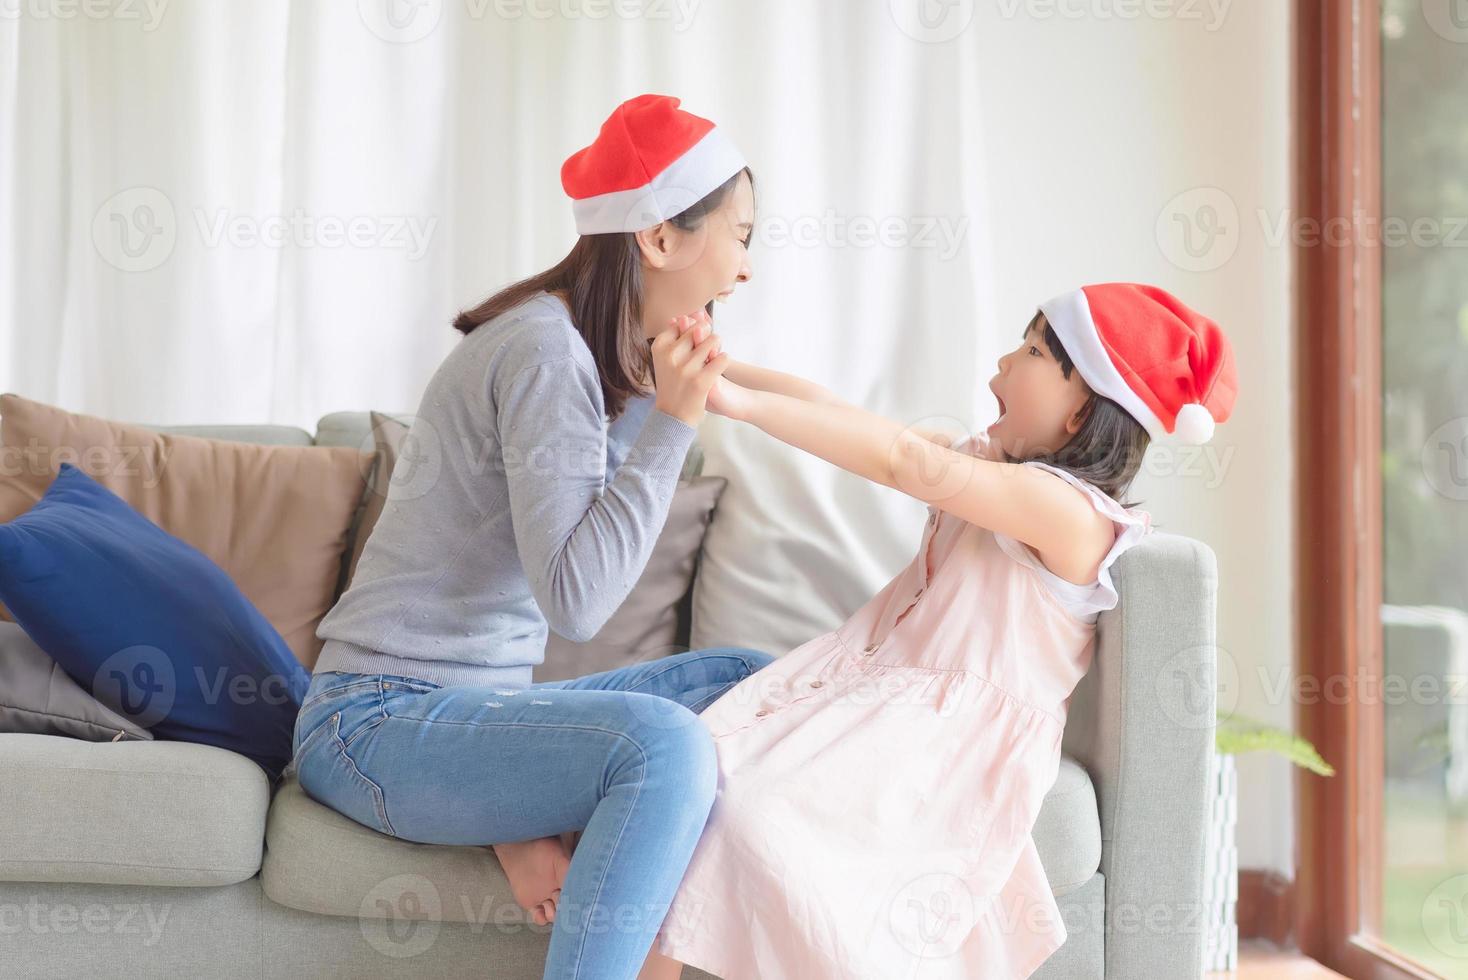 madre e hija asiáticas disfrutan de celebrar la fiesta de navidad y año nuevo en casa en diciembre foto